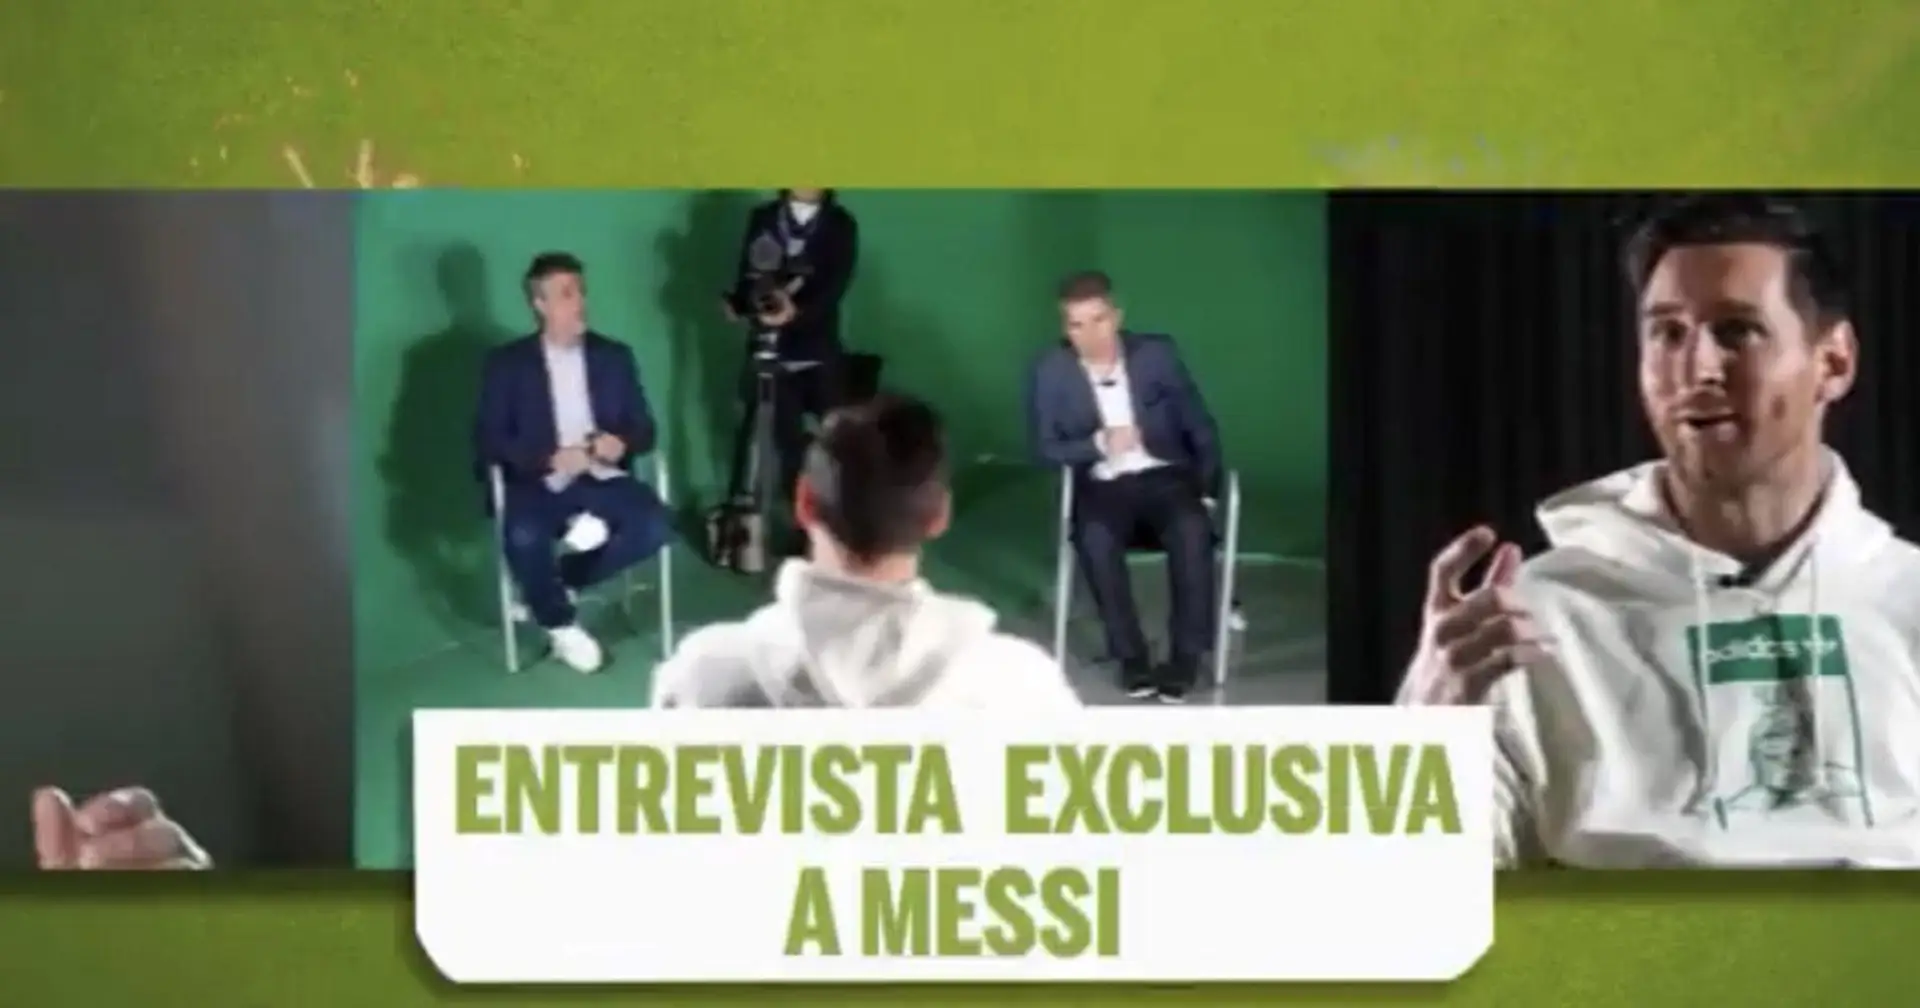 Future mise à jour à venir? L'interview exclusive de Leo Messi sera publiée samedi